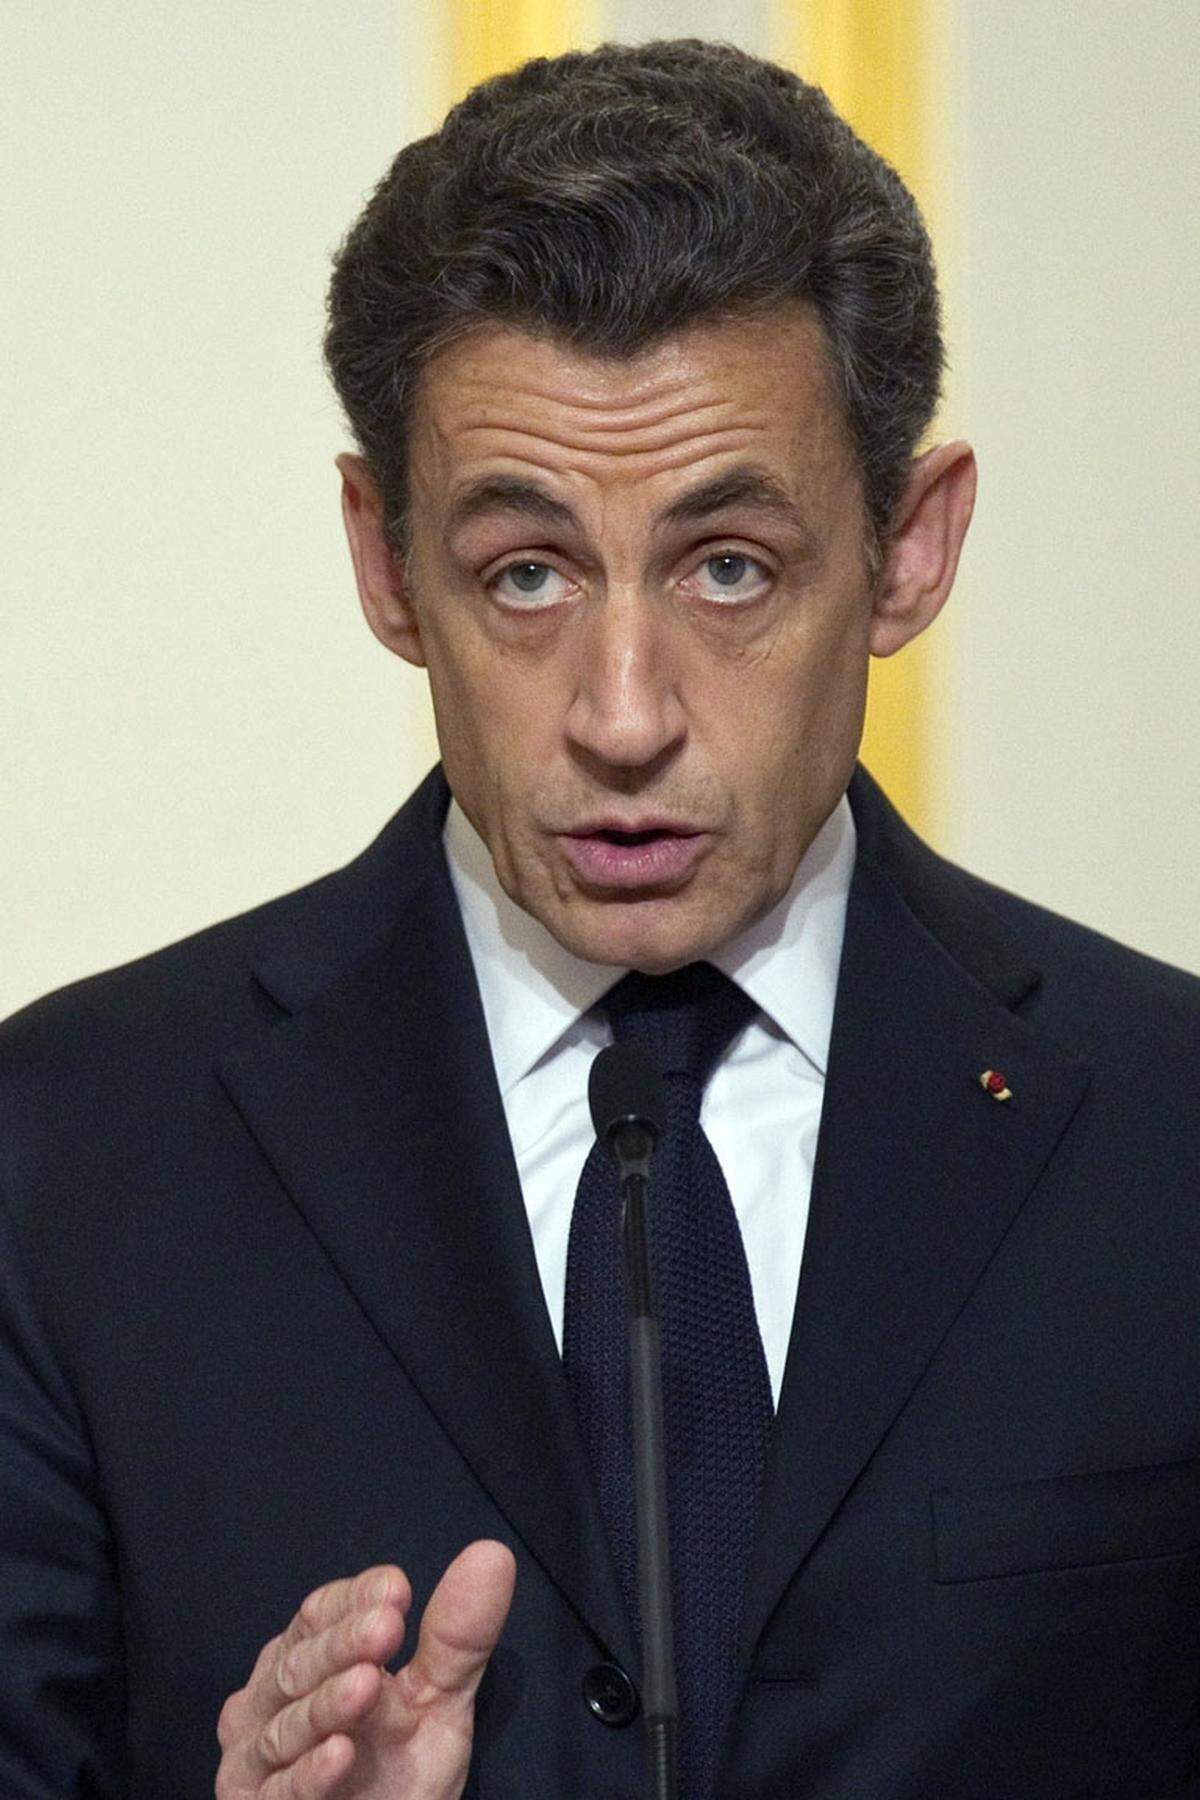 "Frankreich ist entschlossen, seine Rolle in der Geschichte auszufüllen."Mit diesen Worten kündigt Präsident Nicolas Sarkozy den Militäreinsatz gegen das libysche Regime an.